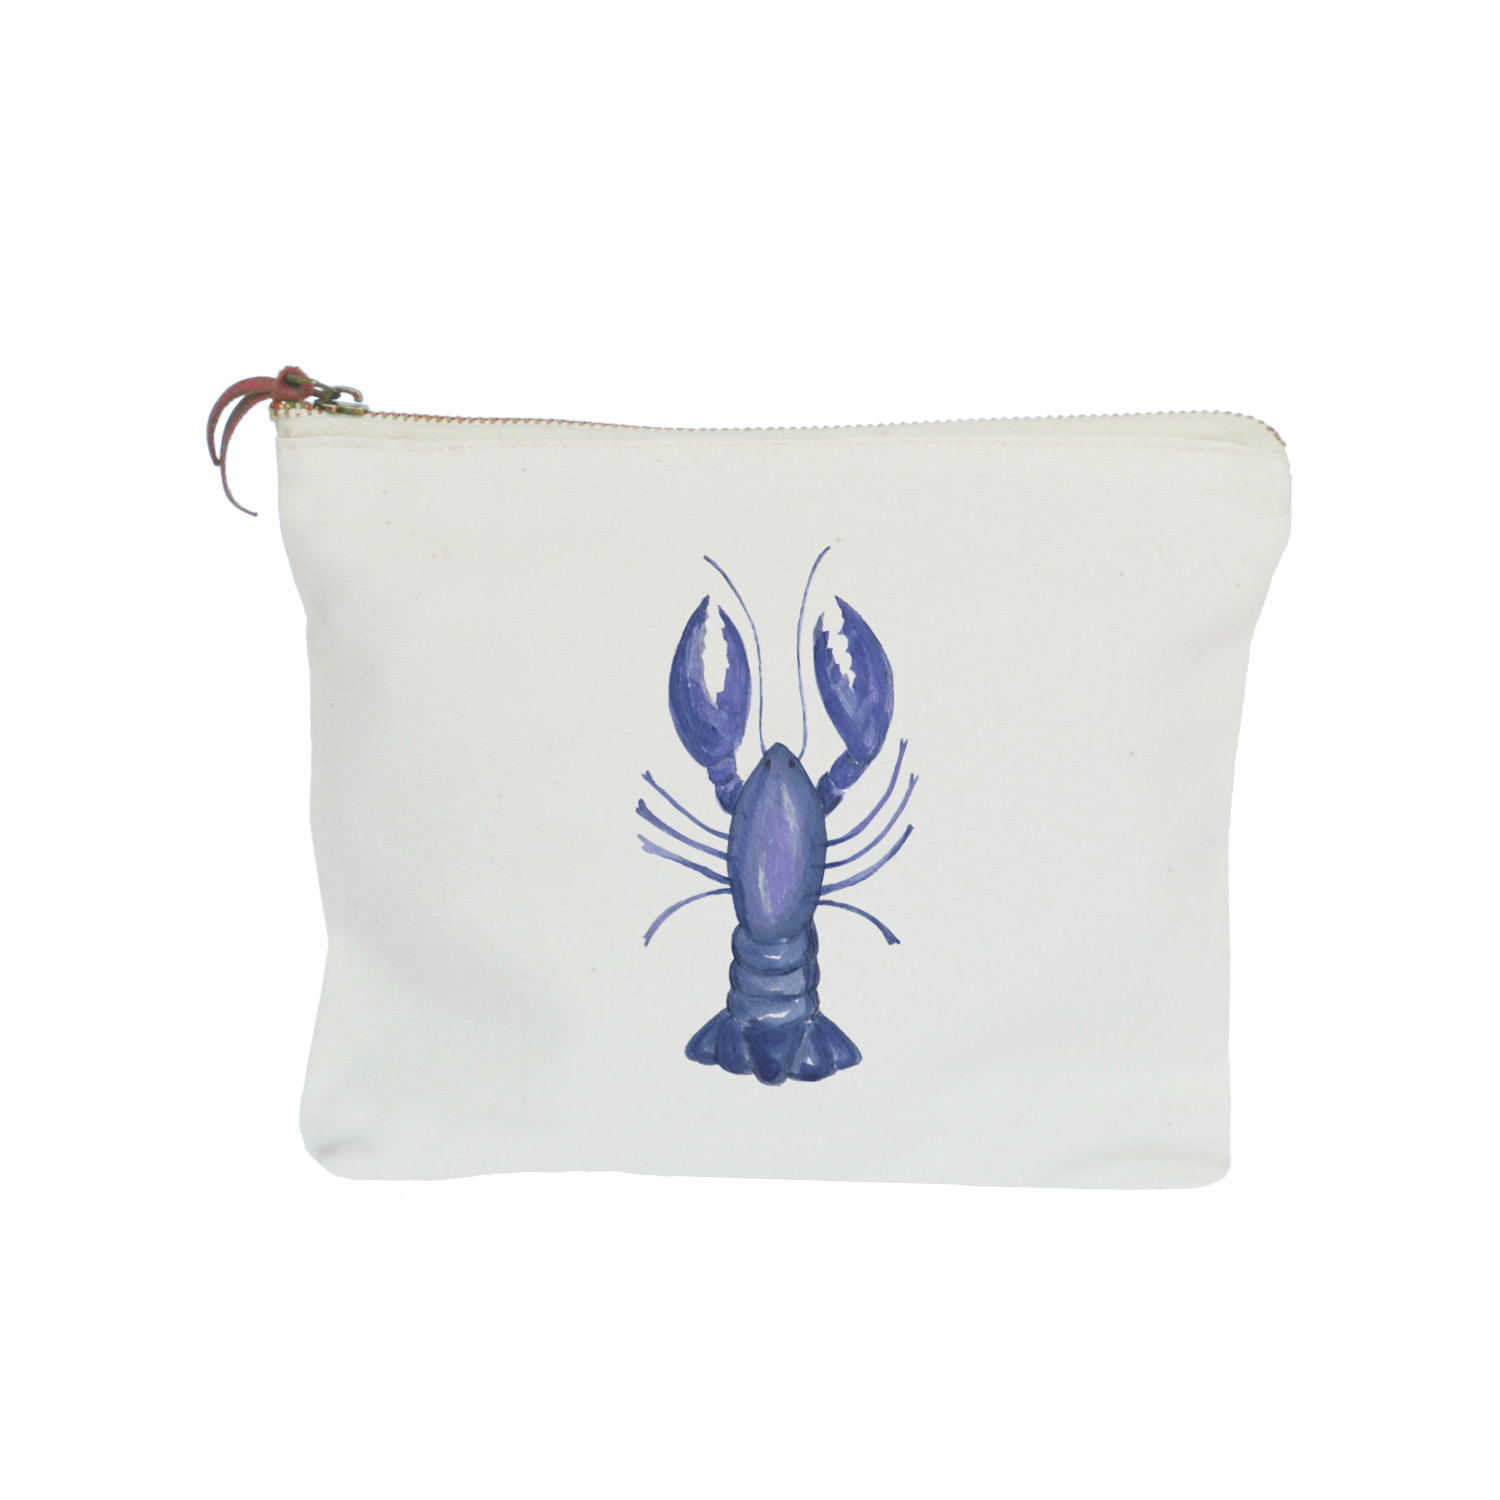 blue lobster zipper pouch